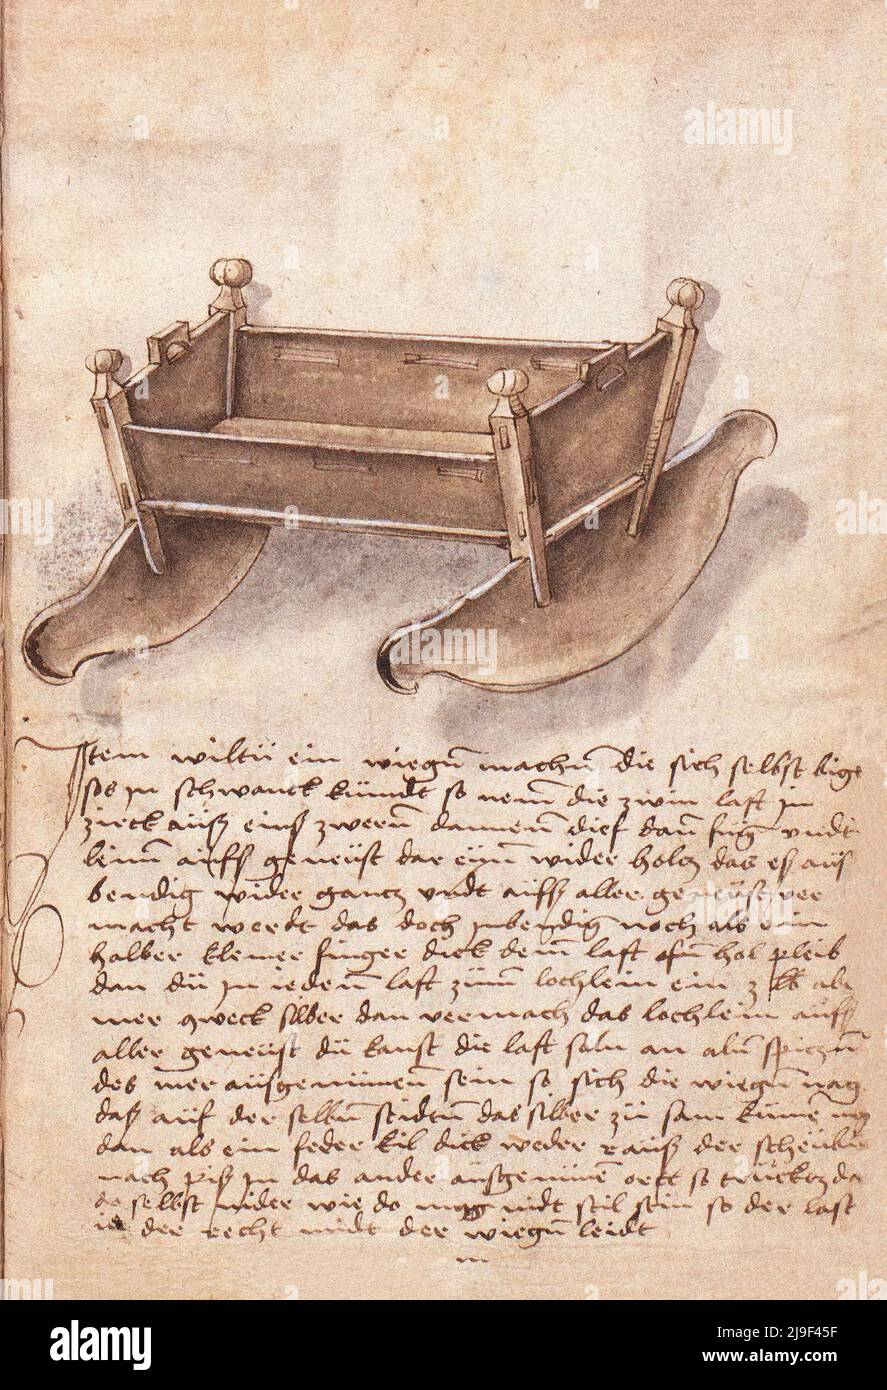 Illustrazione medievale della culla a dondolo. Gli strumenti di Martin Löffelholz (1505) Löffelholtz Codex. Illustrazioni e descrizioni di tutti i tipi di mano Foto Stock